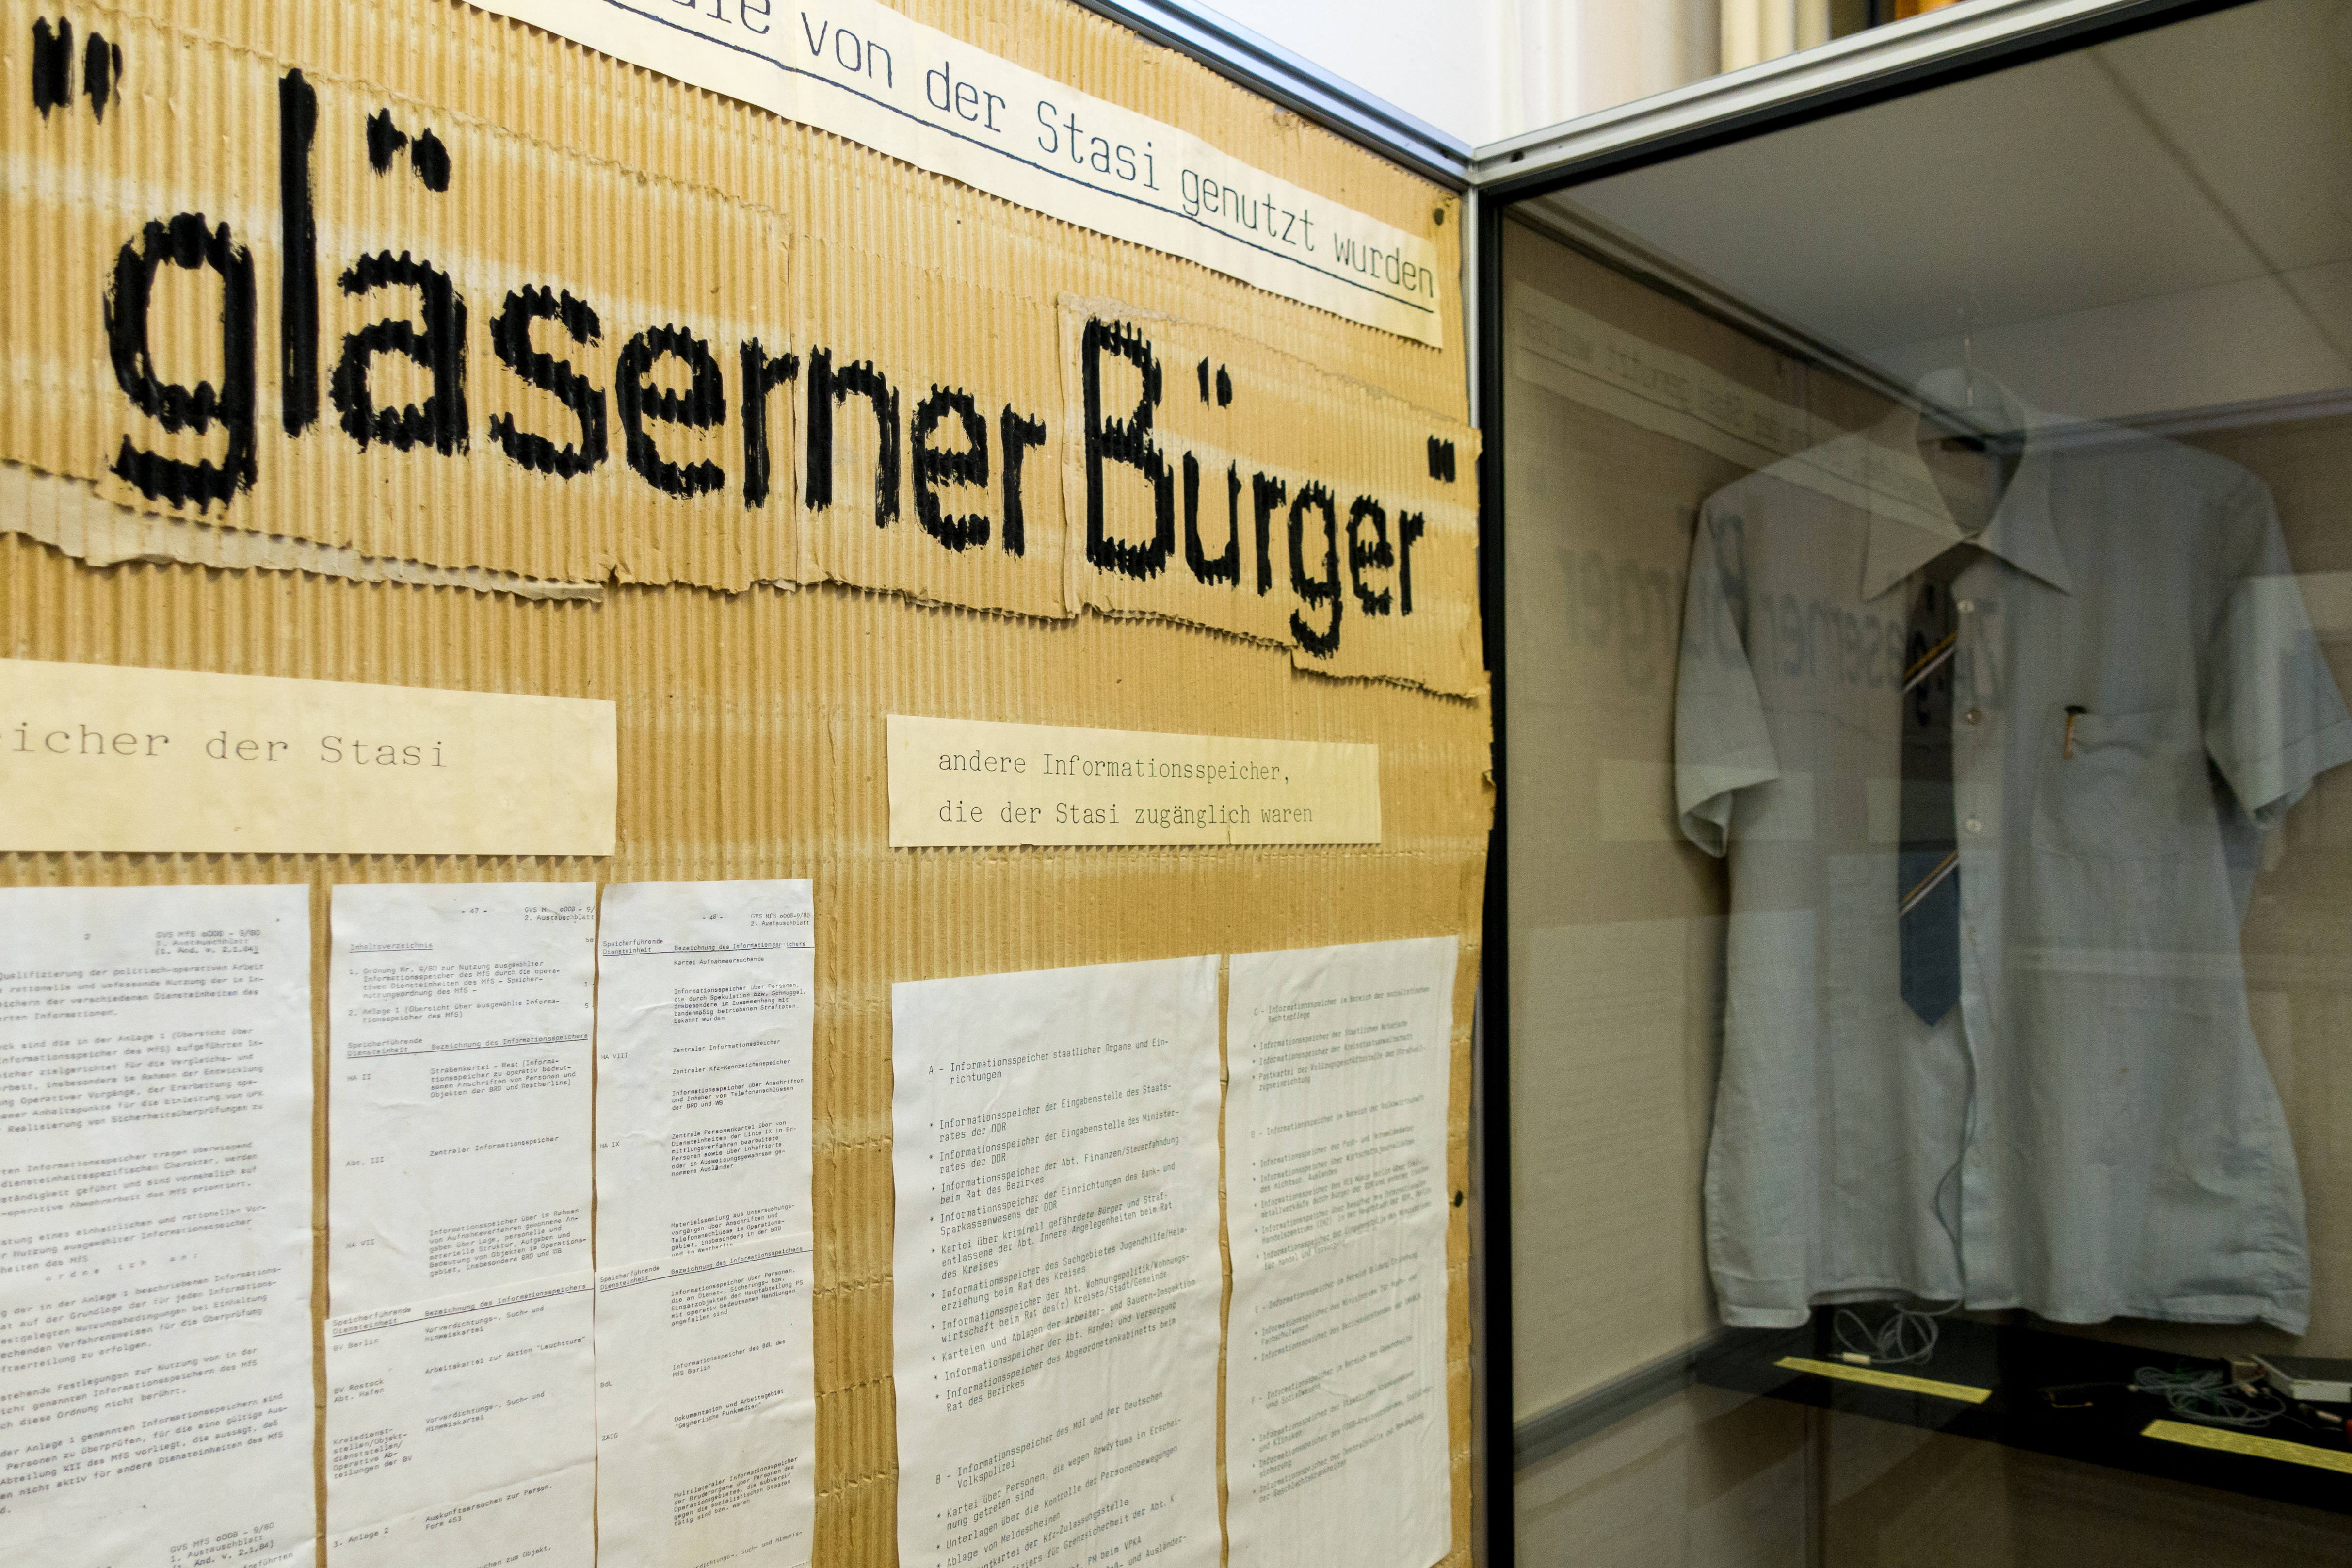 Das Bild zeigt eine Ausstellung mit Gegenständen und Dokumenten, die von der Stasi genutzt wurden. Im Vordergrund ist ein großes Schild mit der Aufschrift "gläserner Bürger" zu sehen, was sich auf die Überwachungsmethoden der Stasi bezieht, durch die Bürger transparent und ihre Privatsphäre durchsichtig gemacht wurden. Es sind verschiedene Papiere und Dokumente ausgestellt, die als "andere Informationsspeicher, die der Stasi zugänglich waren" beschrieben werden. Im Hintergrund ist eine Glasvitrine mit einem hellen Hemd zu erkennen, was möglicherweise Teil einer Uniform oder repräsentative Kleidung ist, die von Stasi-Mitarbeitern getragen wurde. Bei Klick vergrößert sich das Bild.